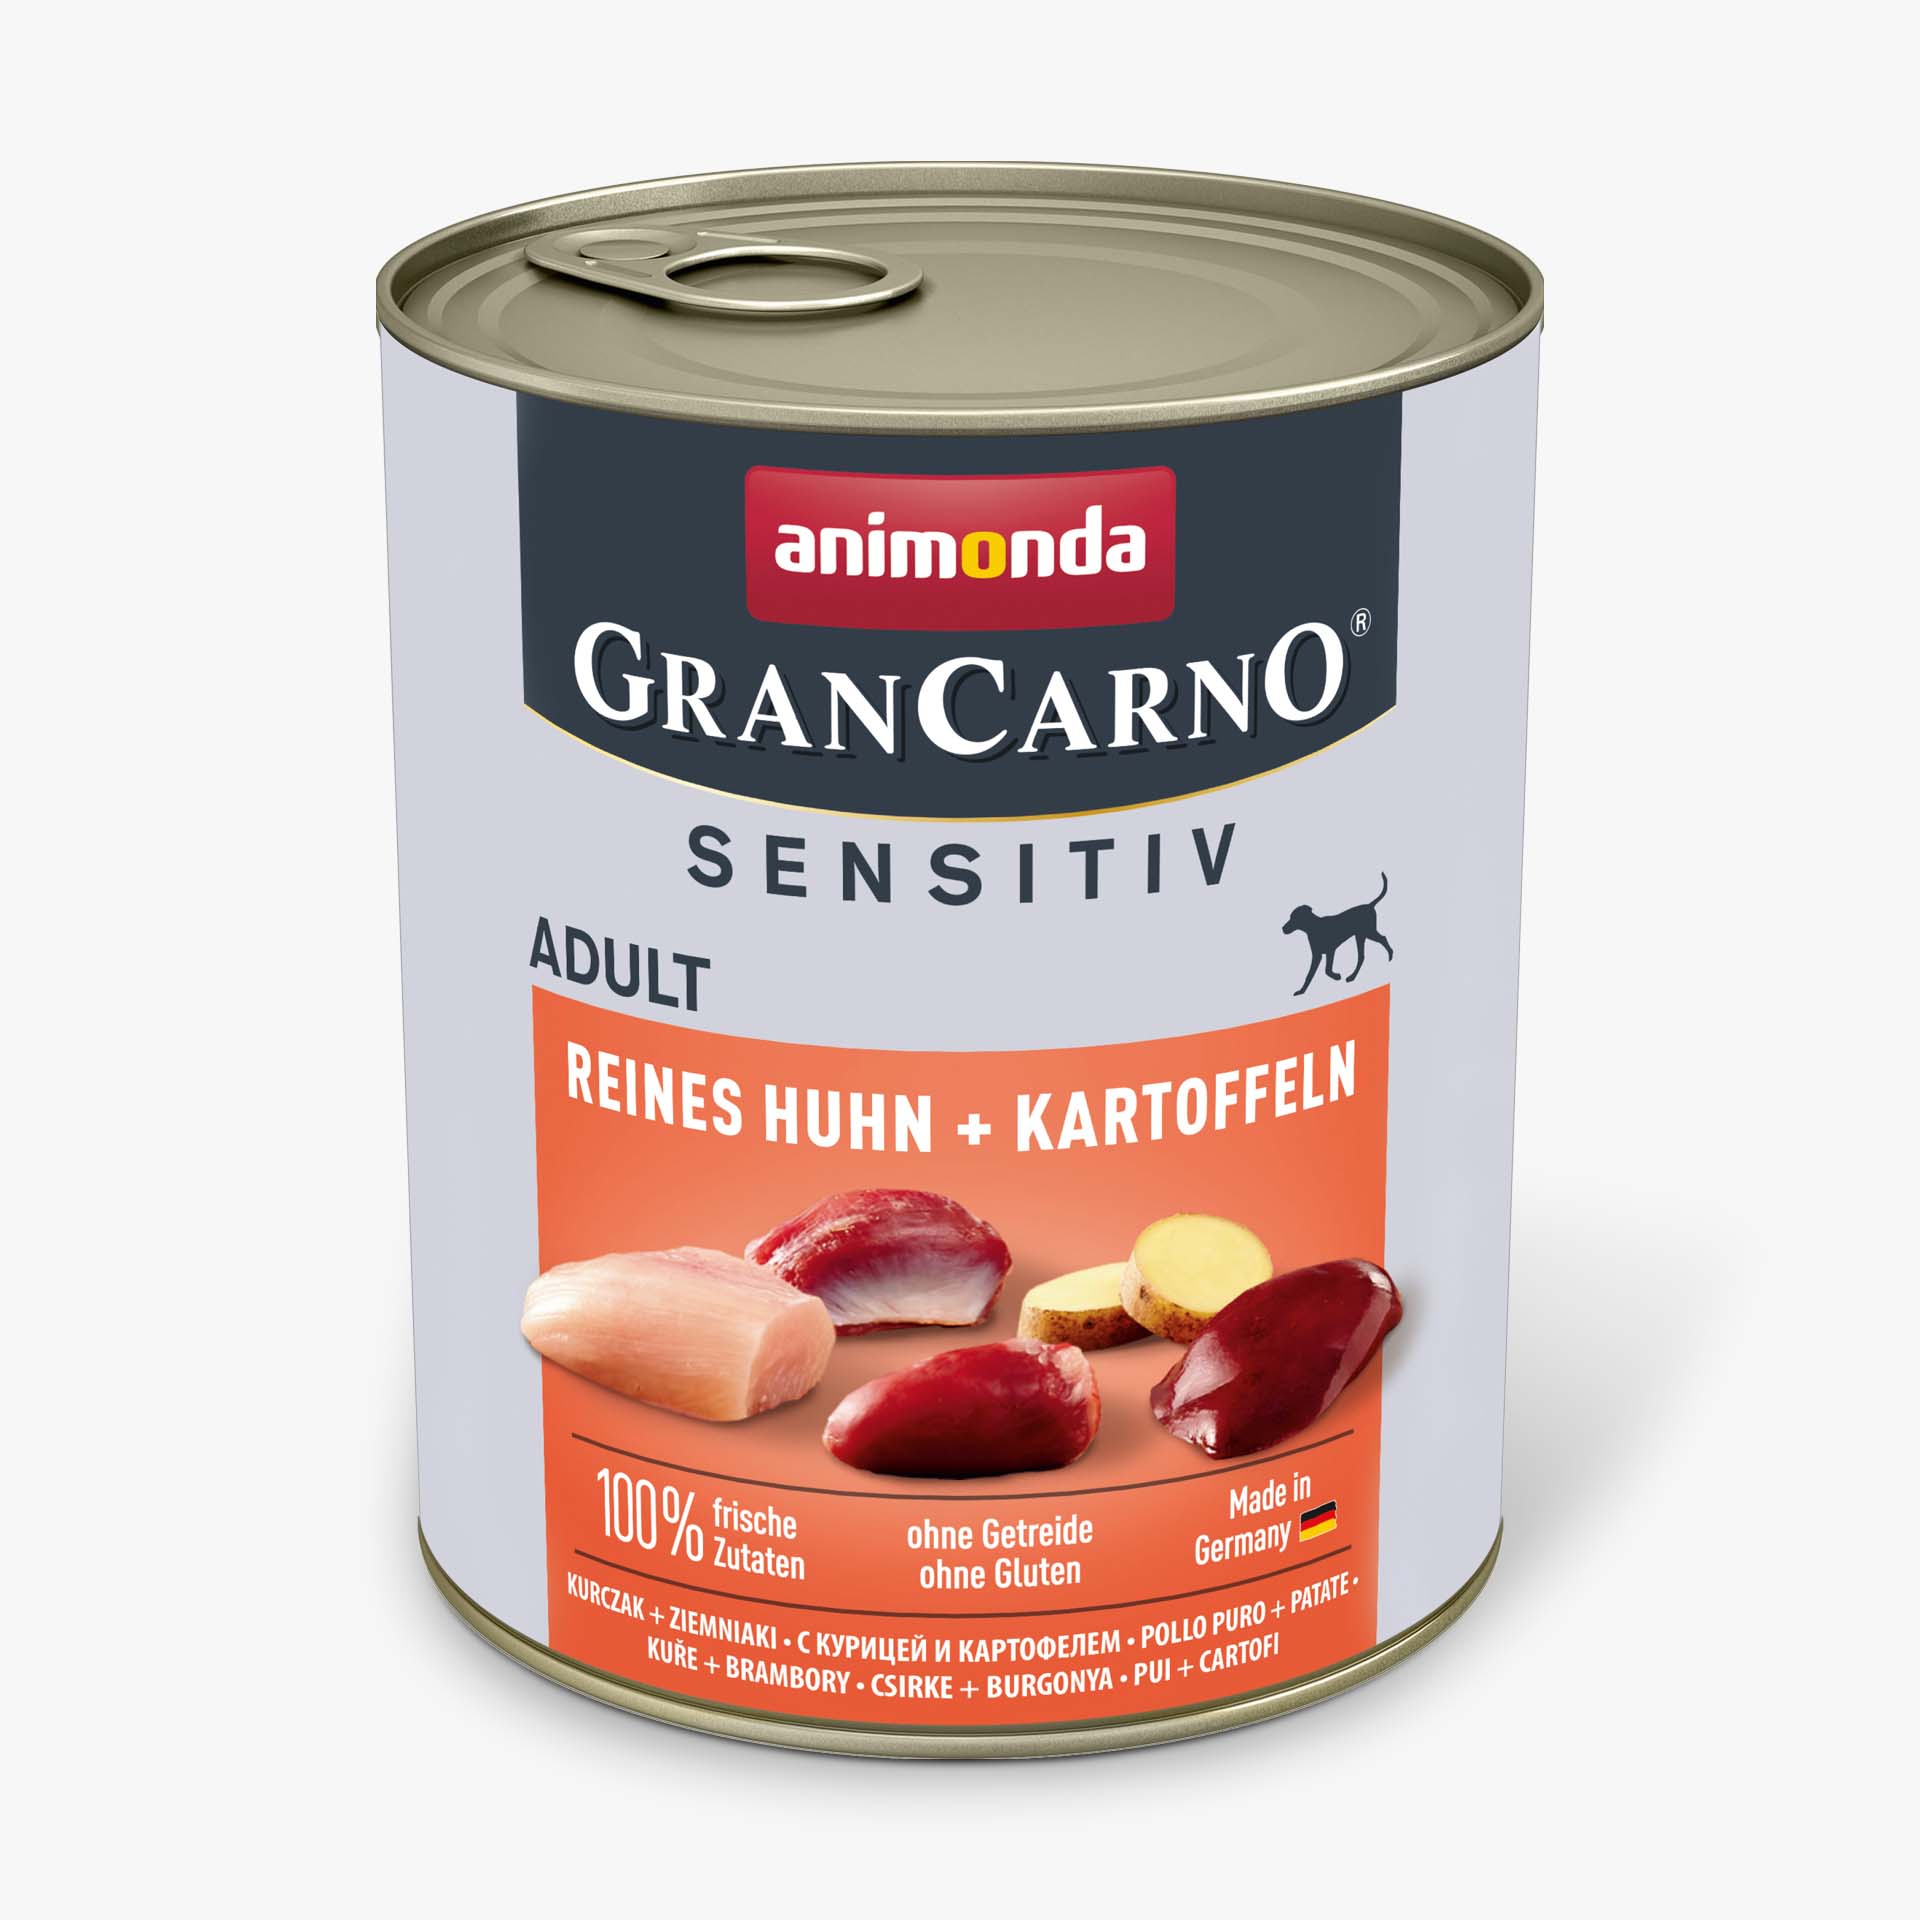 GranCarno pure chicken + potatoes Sensitiv